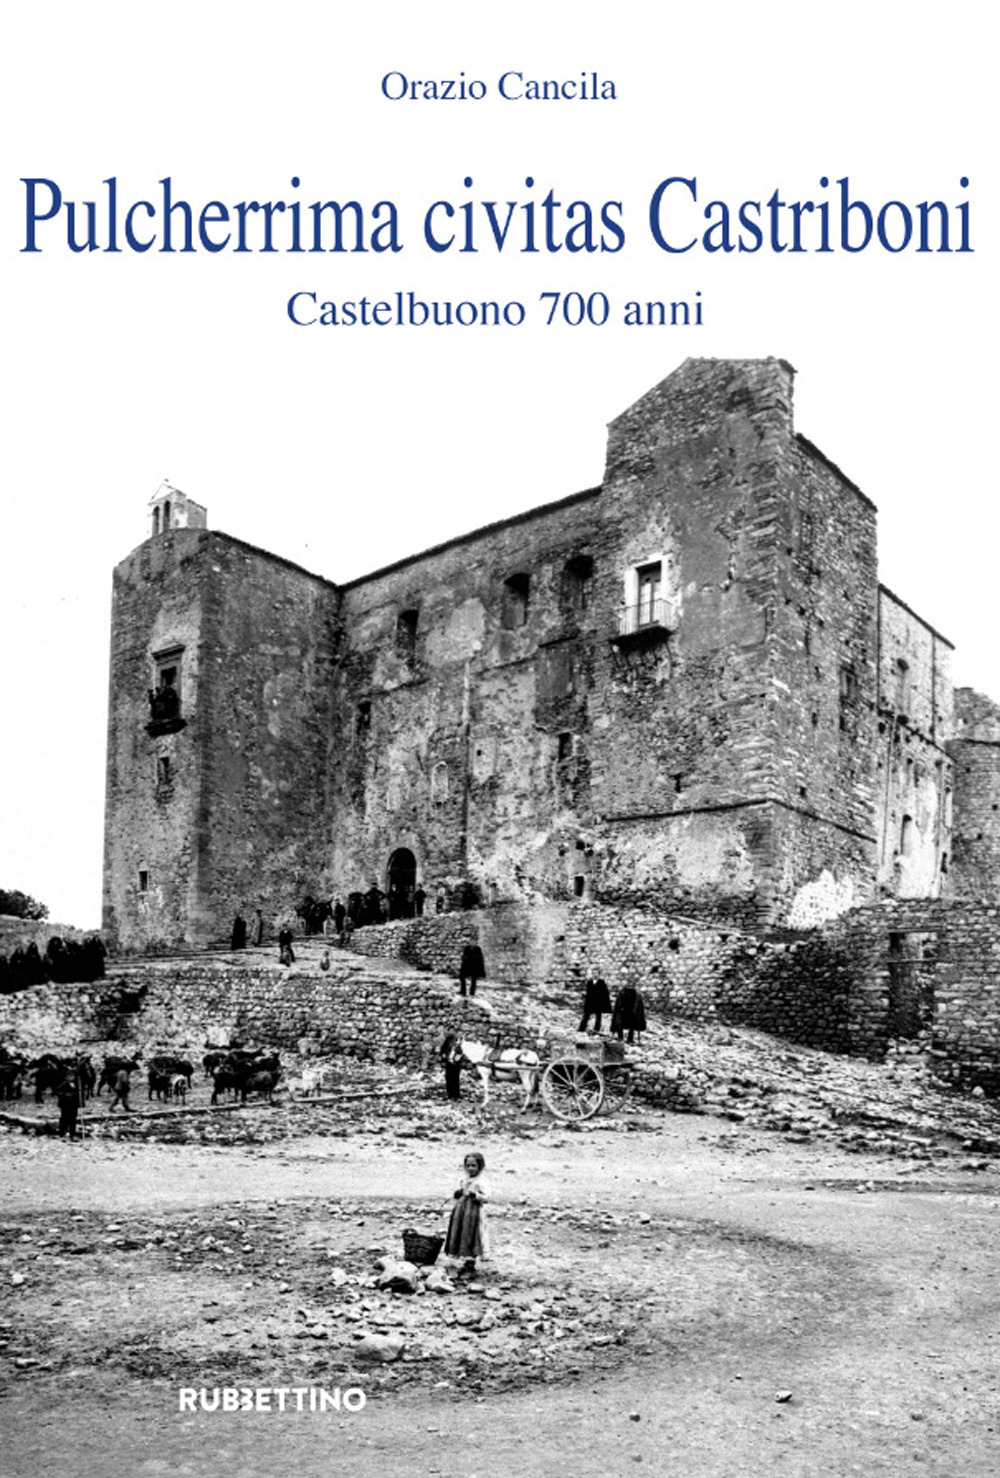 Libri Orazio Cancila - Pulcherrima Civitas Castriboni. Castelbuono 700 Anni NUOVO SIGILLATO, EDIZIONE DEL 04/01/2022 SUBITO DISPONIBILE